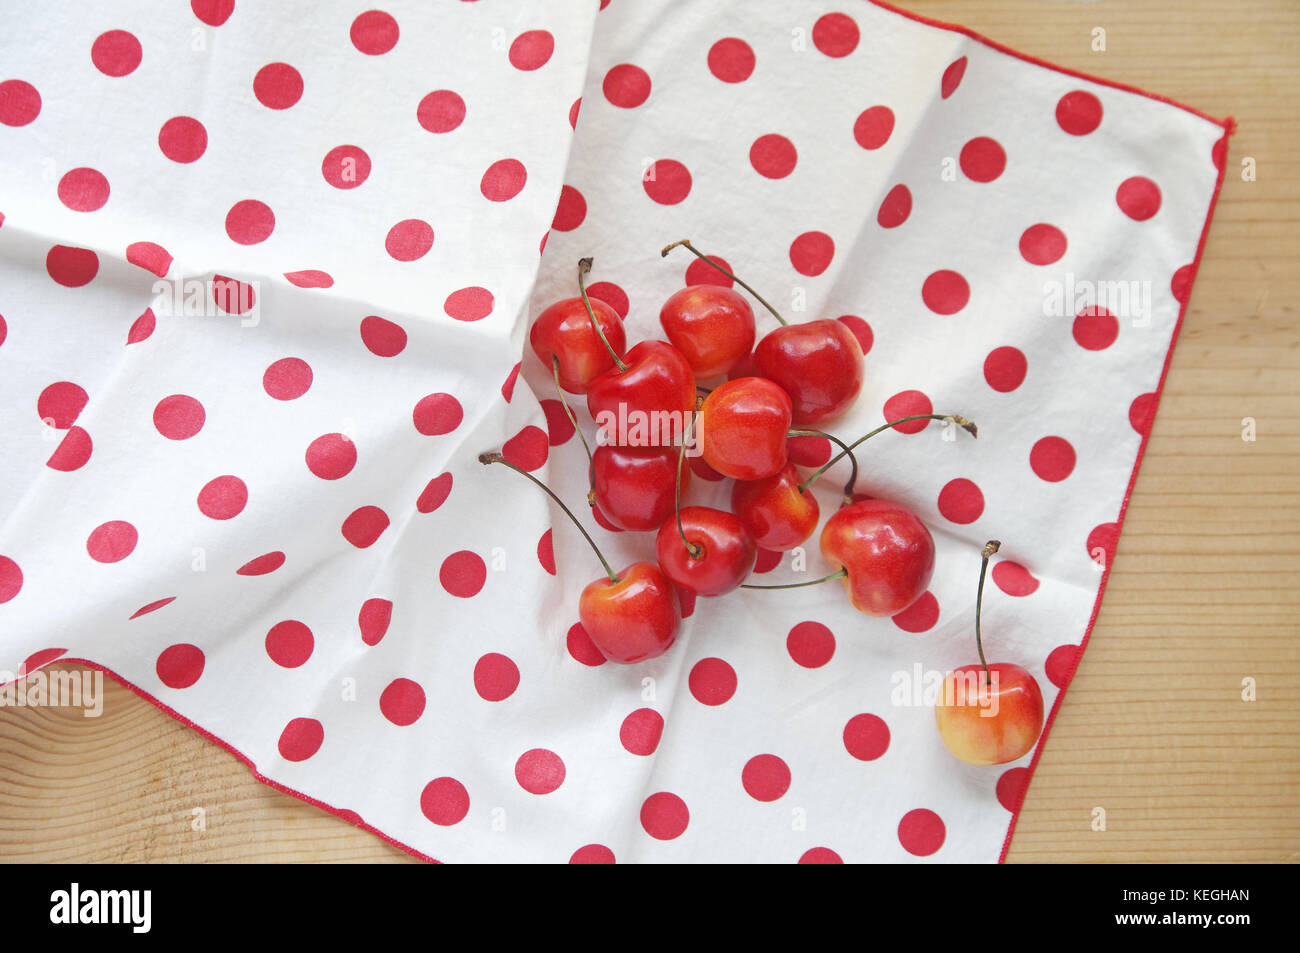 Cerises fraîches sur une serviette blanche à pois rouges Banque D'Images